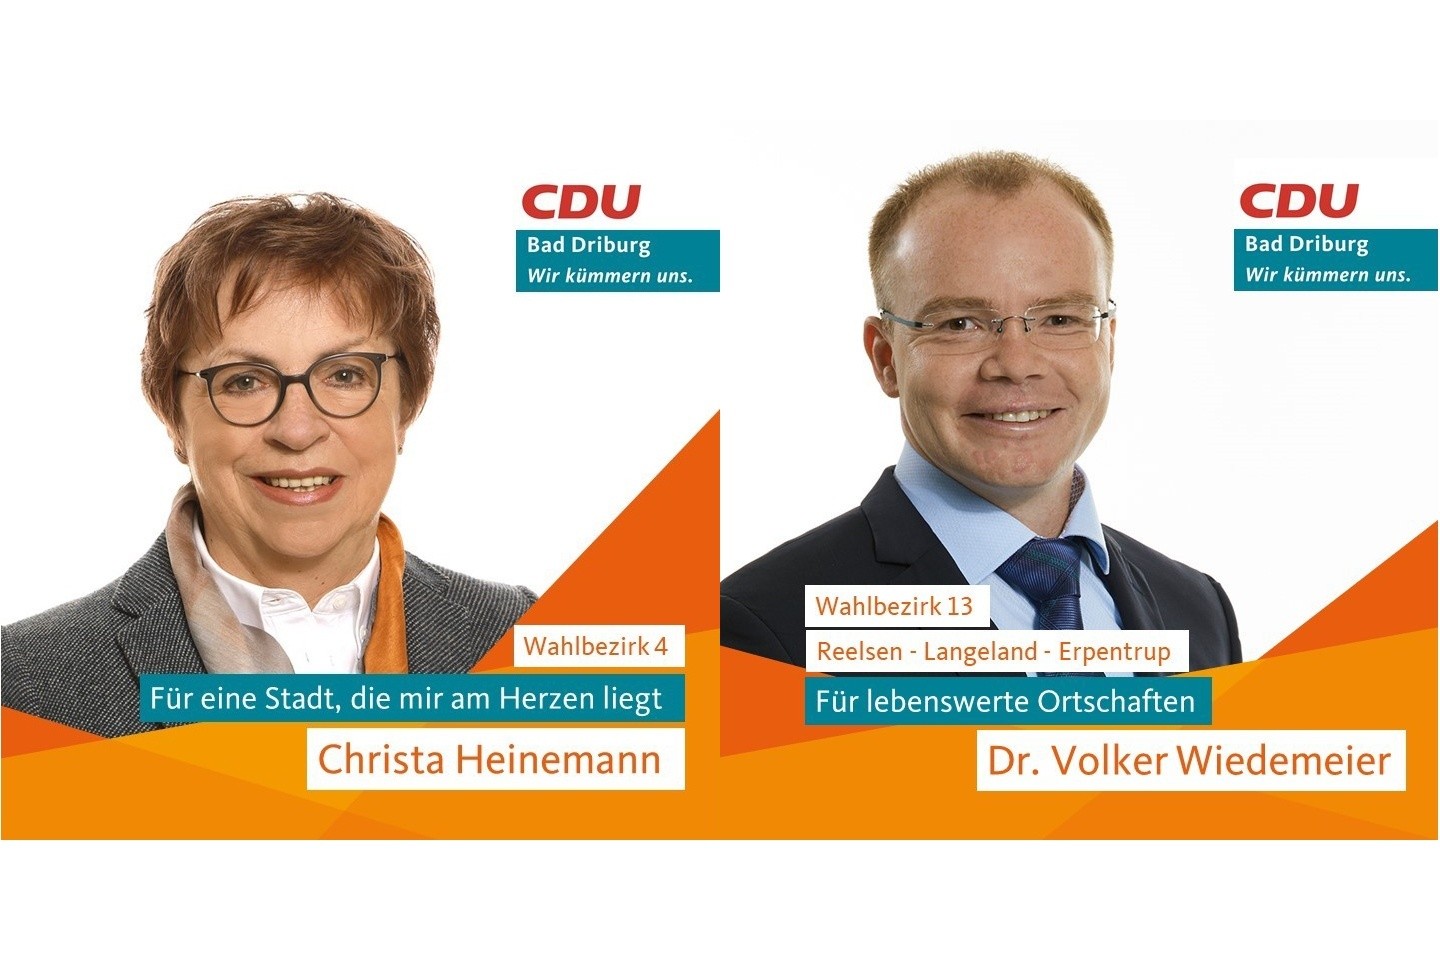 Kandidatenvorstellung zur Kommunalwahl 2020 Christa Heinemann, Dr. Volker Wiedemeier, CDU Bad Driburg